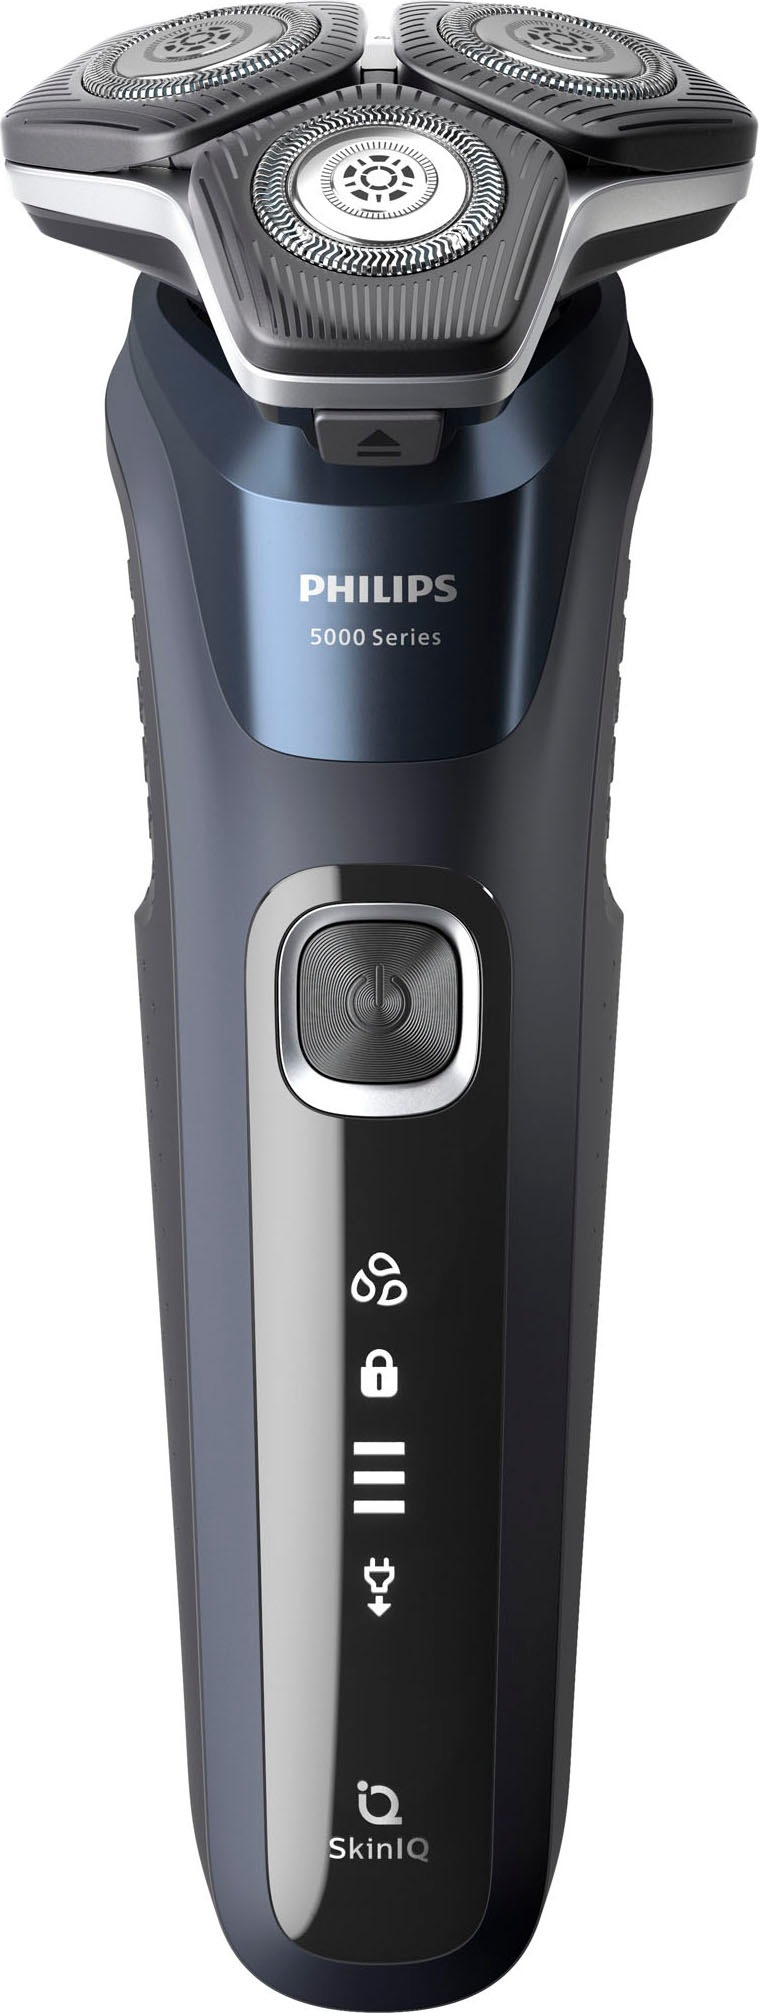 Philips Elektrorasierer »Shaver Series 5000 S5885/35«, ausklappbarer Präzisionstrimmer, Etui, Ladestand, mit SkinIQ Technologie